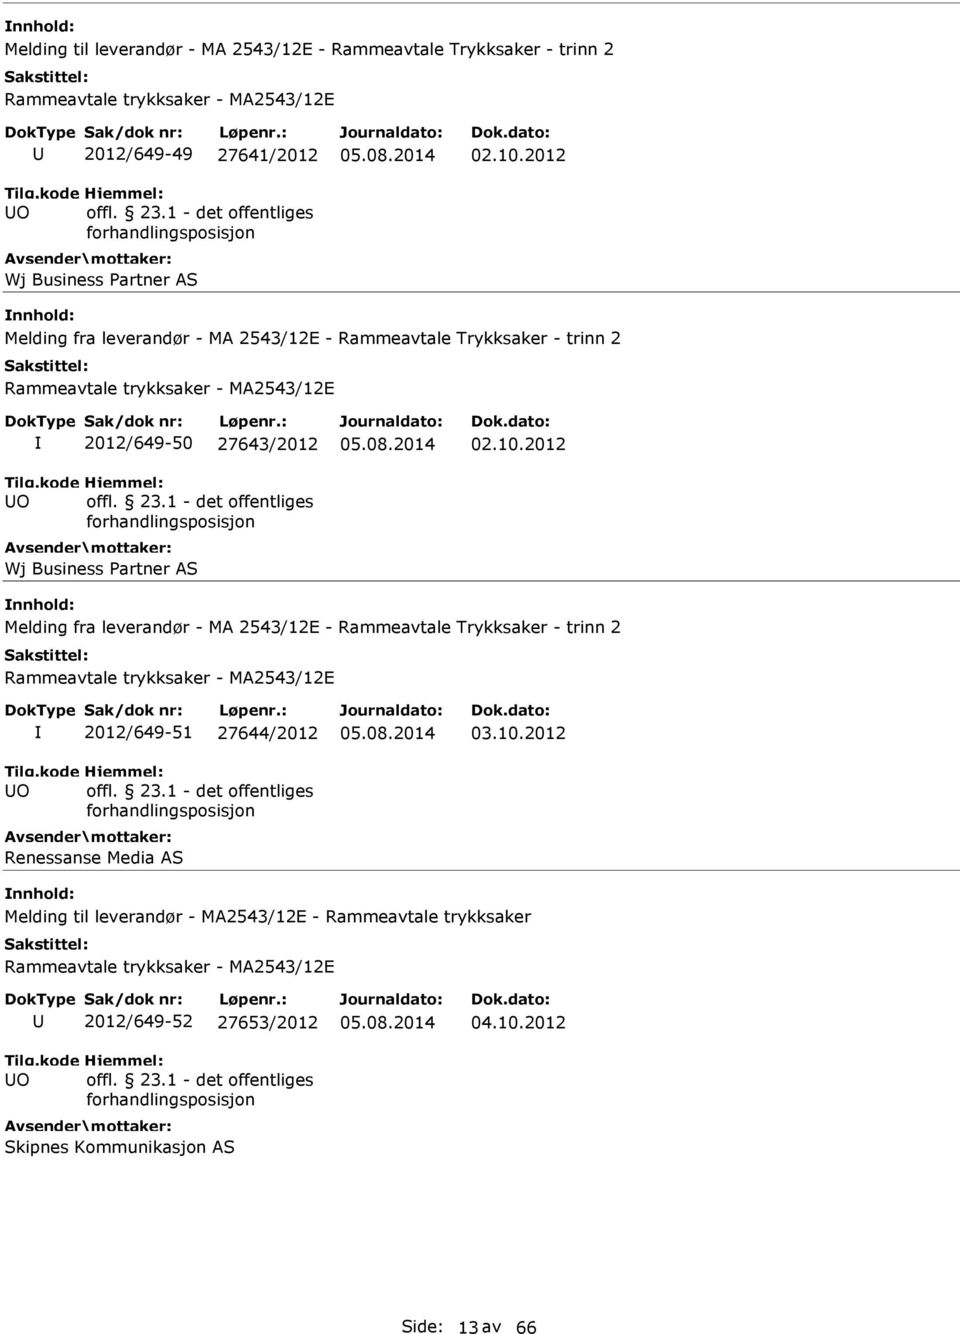 2012 Melding fra leverandør - MA 2543/12E - Rammeavtale Trykksaker - trinn 2 2012/649-51 27644/2012 Renessanse Media AS 03.10.